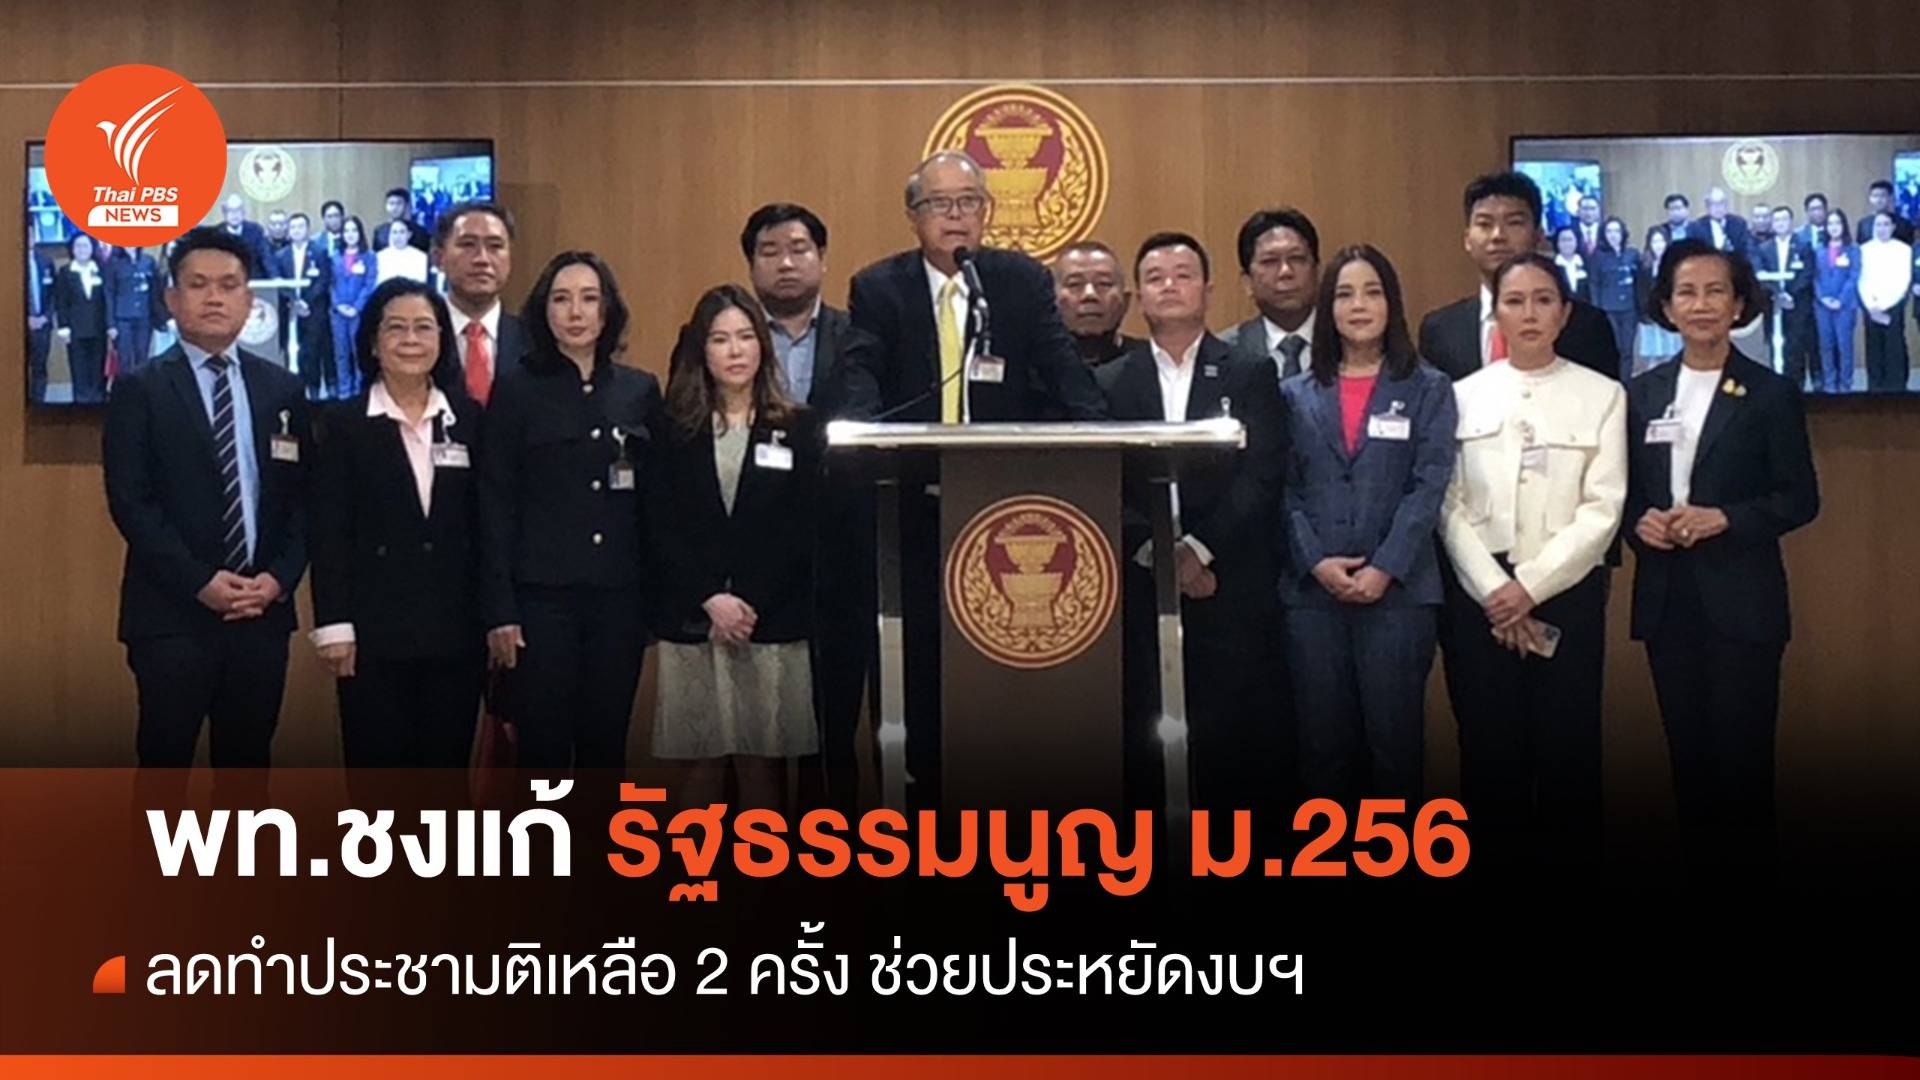 "เพื่อไทย" เสนอ แก้รัฐธรรมนูญ ม.256 - ลดทำประชามติเหลือ 2 ครั้ง 